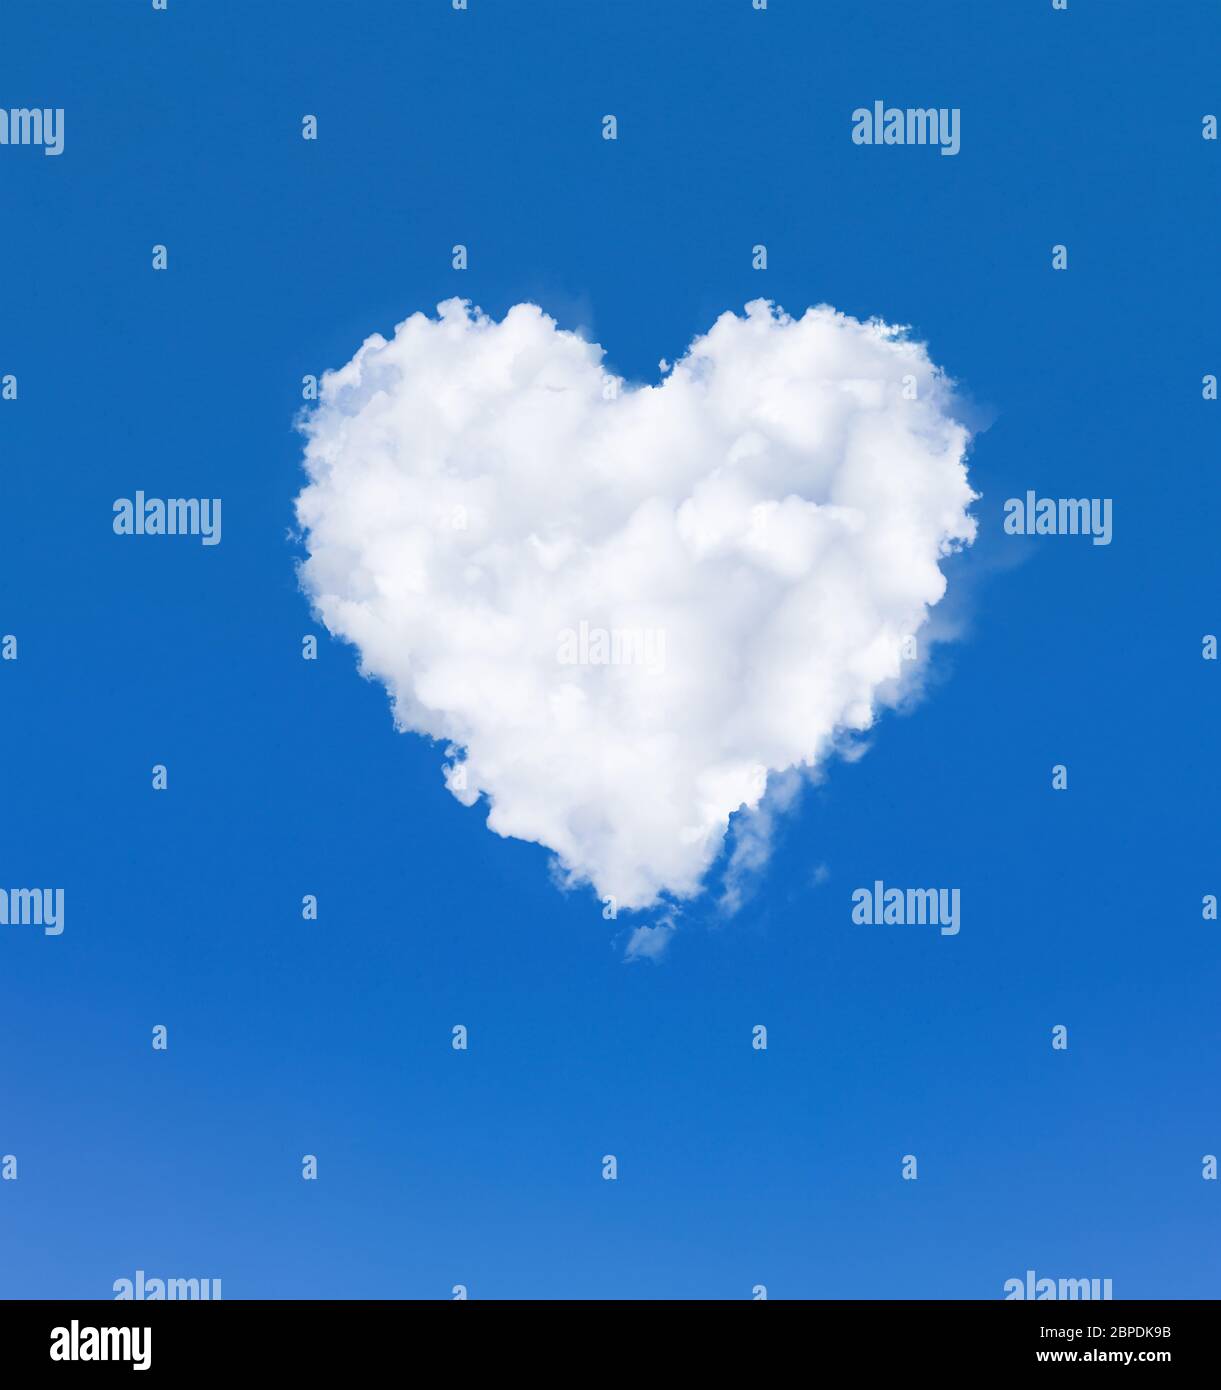 Nuage en forme de coeur dans le ciel. Un nuage blanc dans un ciel bleu. Symbole romantique amour et santé Banque D'Images